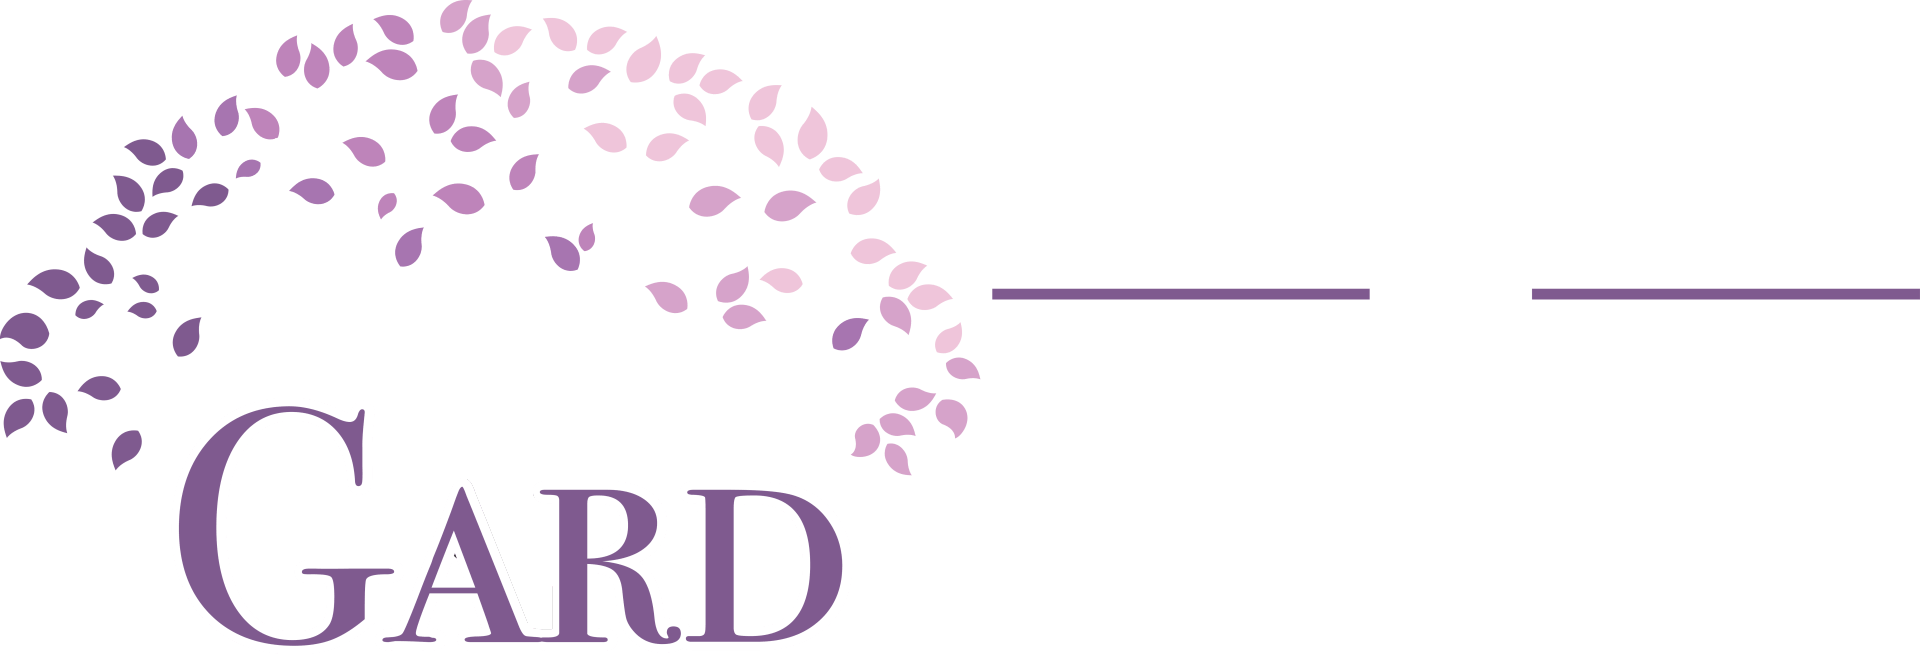 Gard Funeral Home & Cremation Services Logo